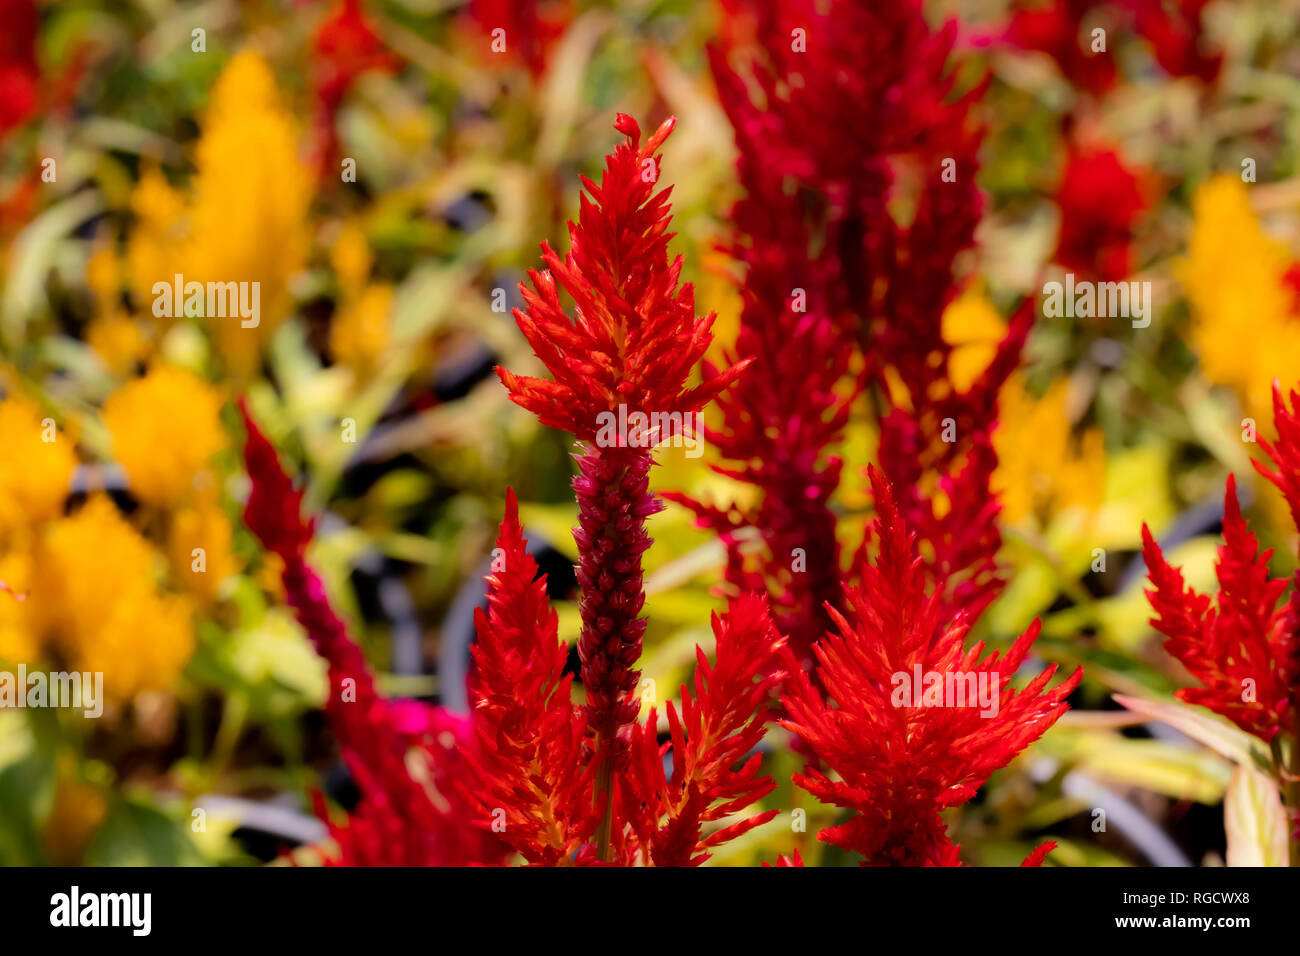 Photo en gros plan de fleurs sauvages et de jardin vibrantes à la lumière du matin, prise en macro-photographie. Banque D'Images